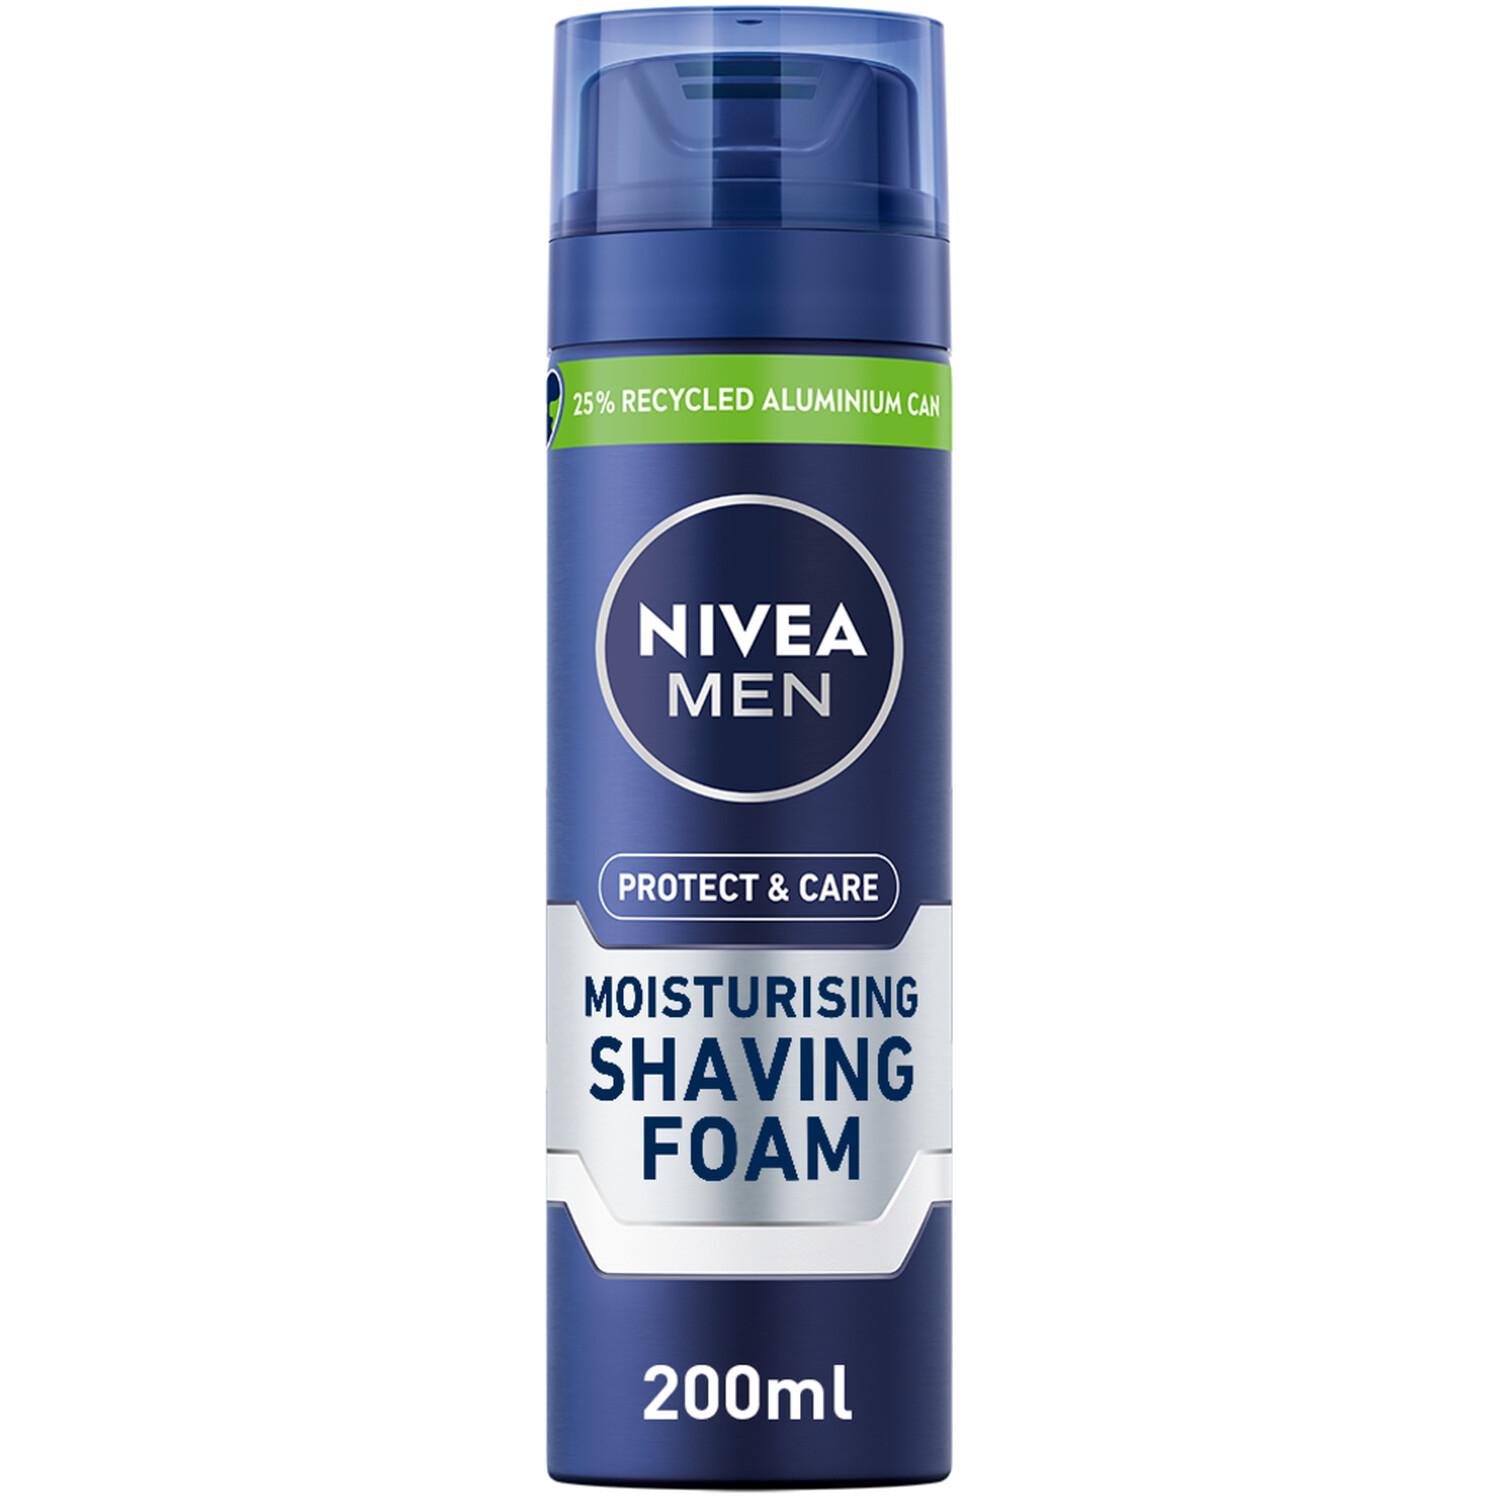 NIVEA MEN Protect & Care Moisturising Shaving Foam - Blue Image